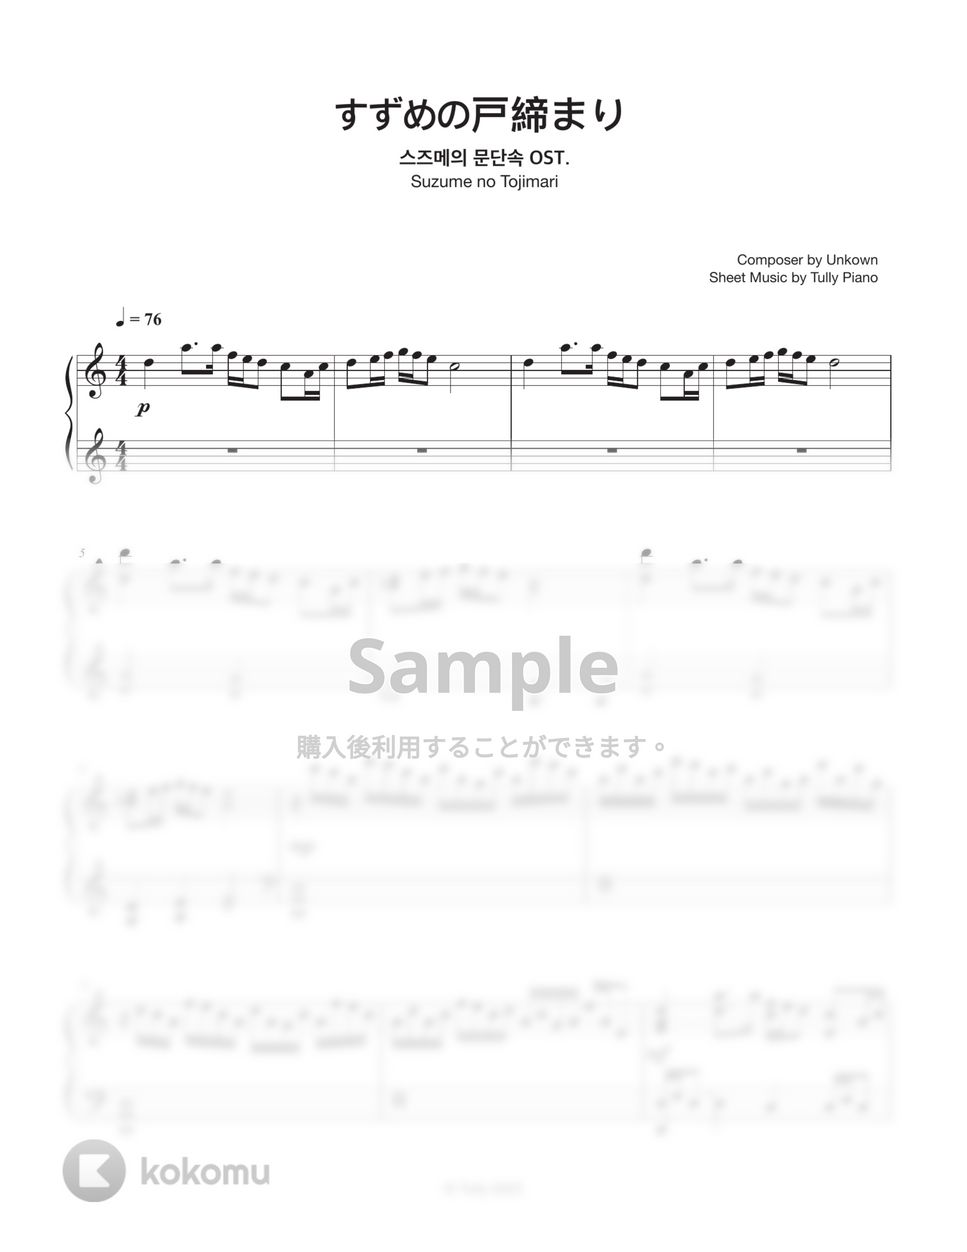 『すずめの戸締まり』OST - 『すずめの戸締まり』 (Short ver.) by Tully Piano